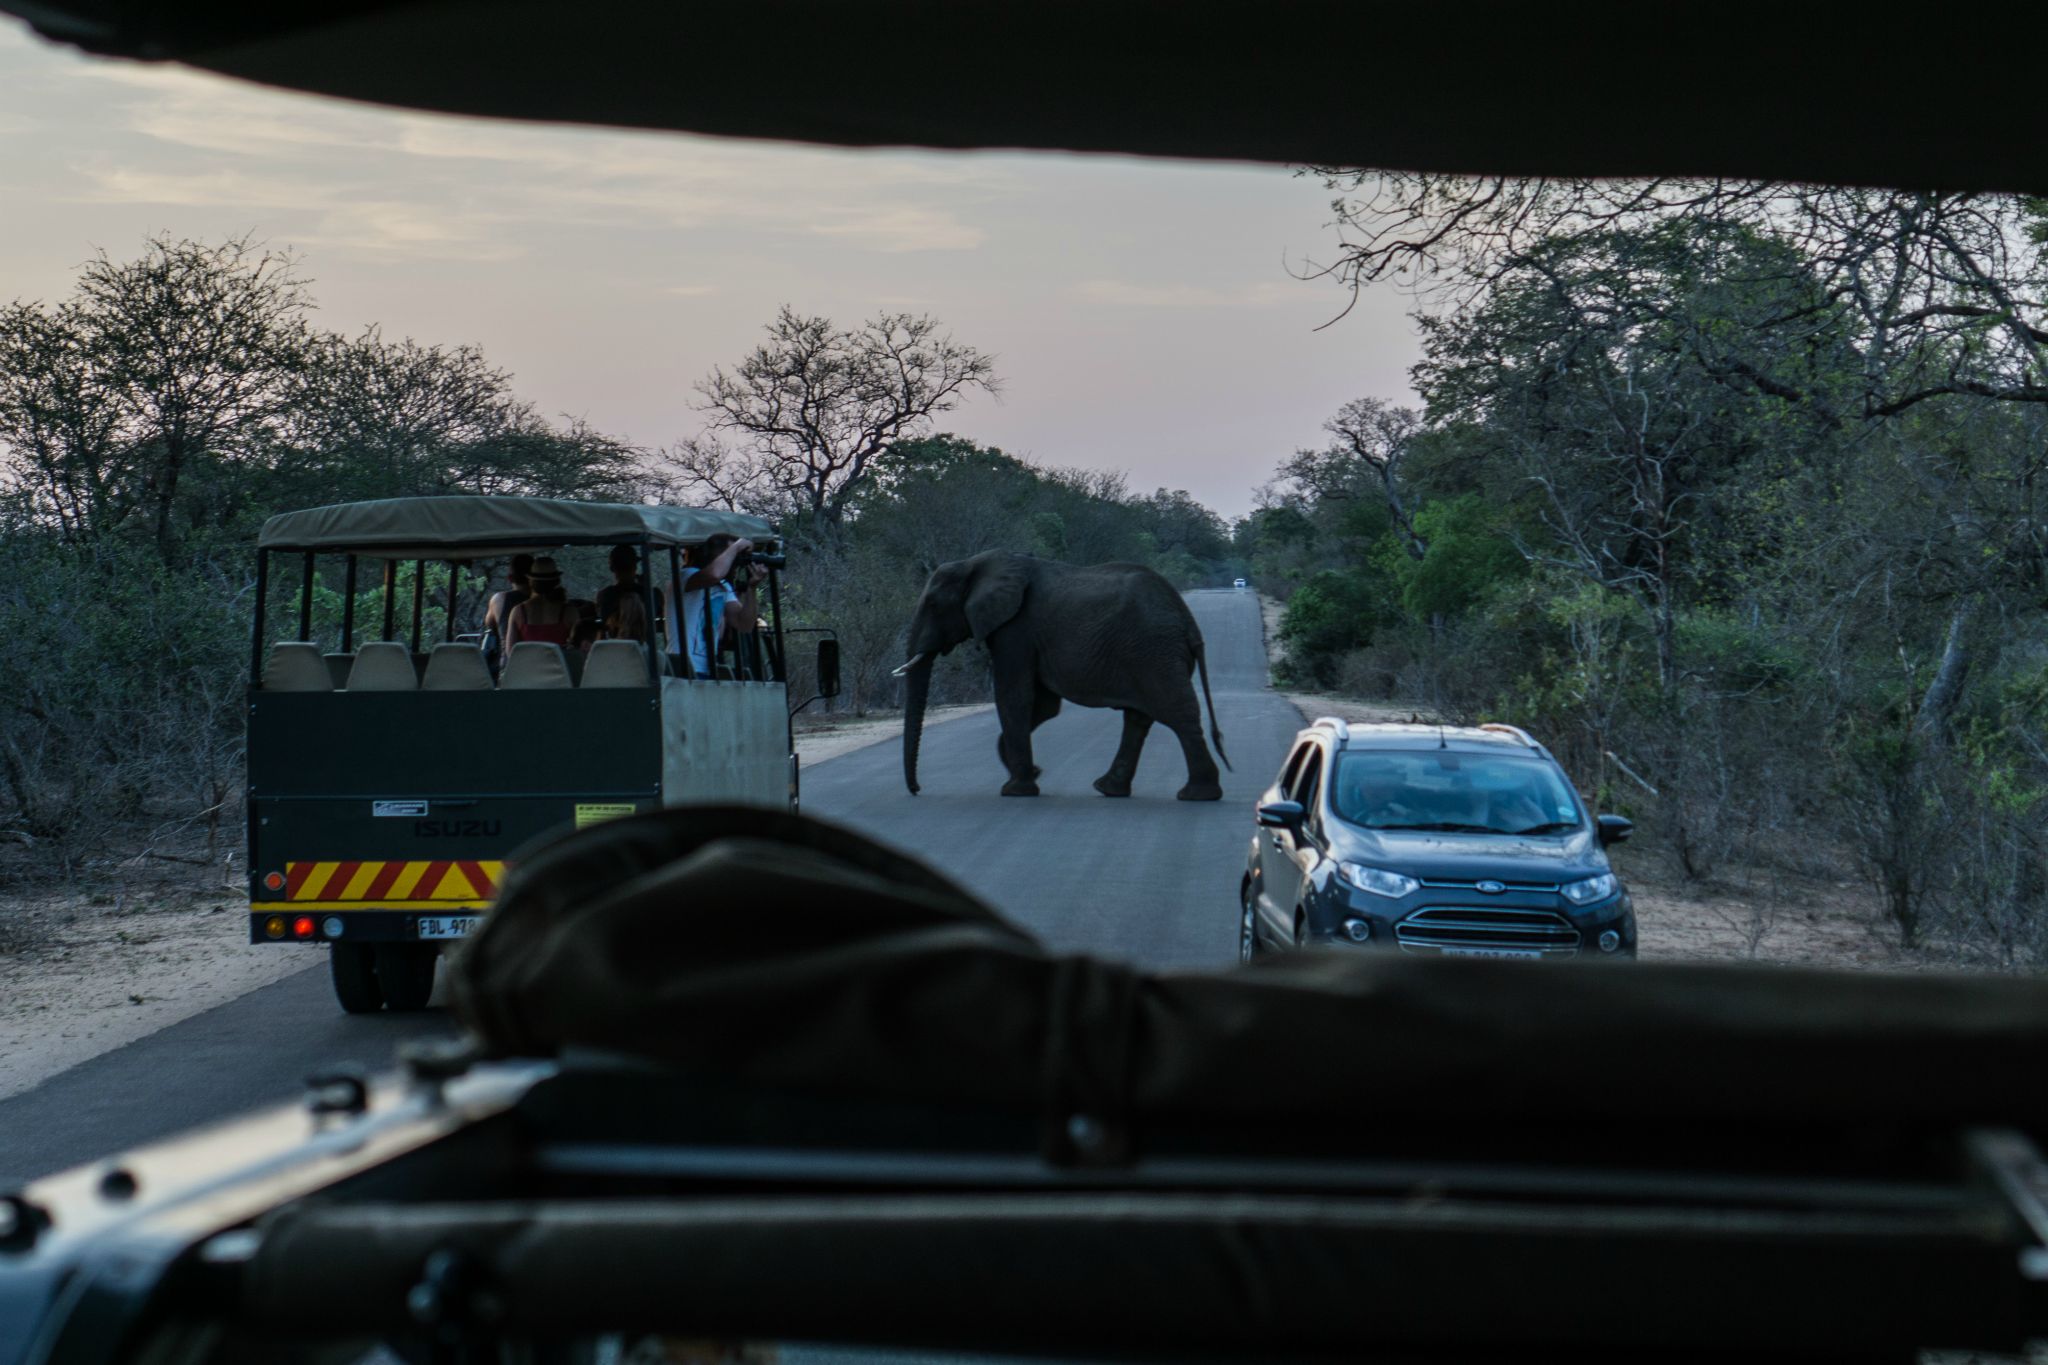 Elephant crossing @ Kruger National Park